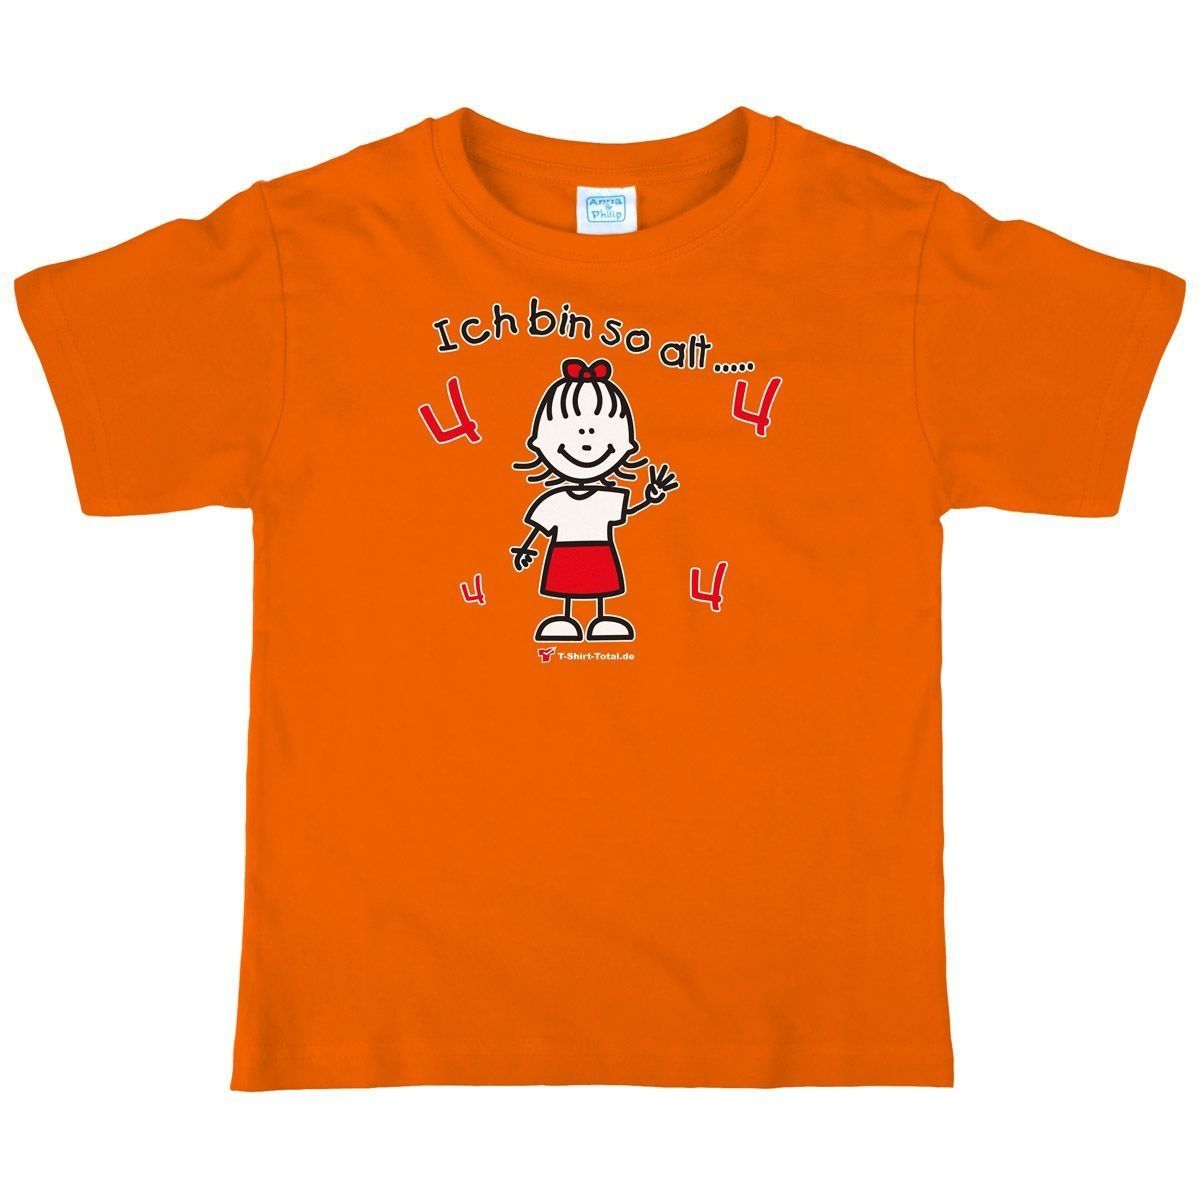 Mädchen so alt 4 Kinder T-Shirt orange 104